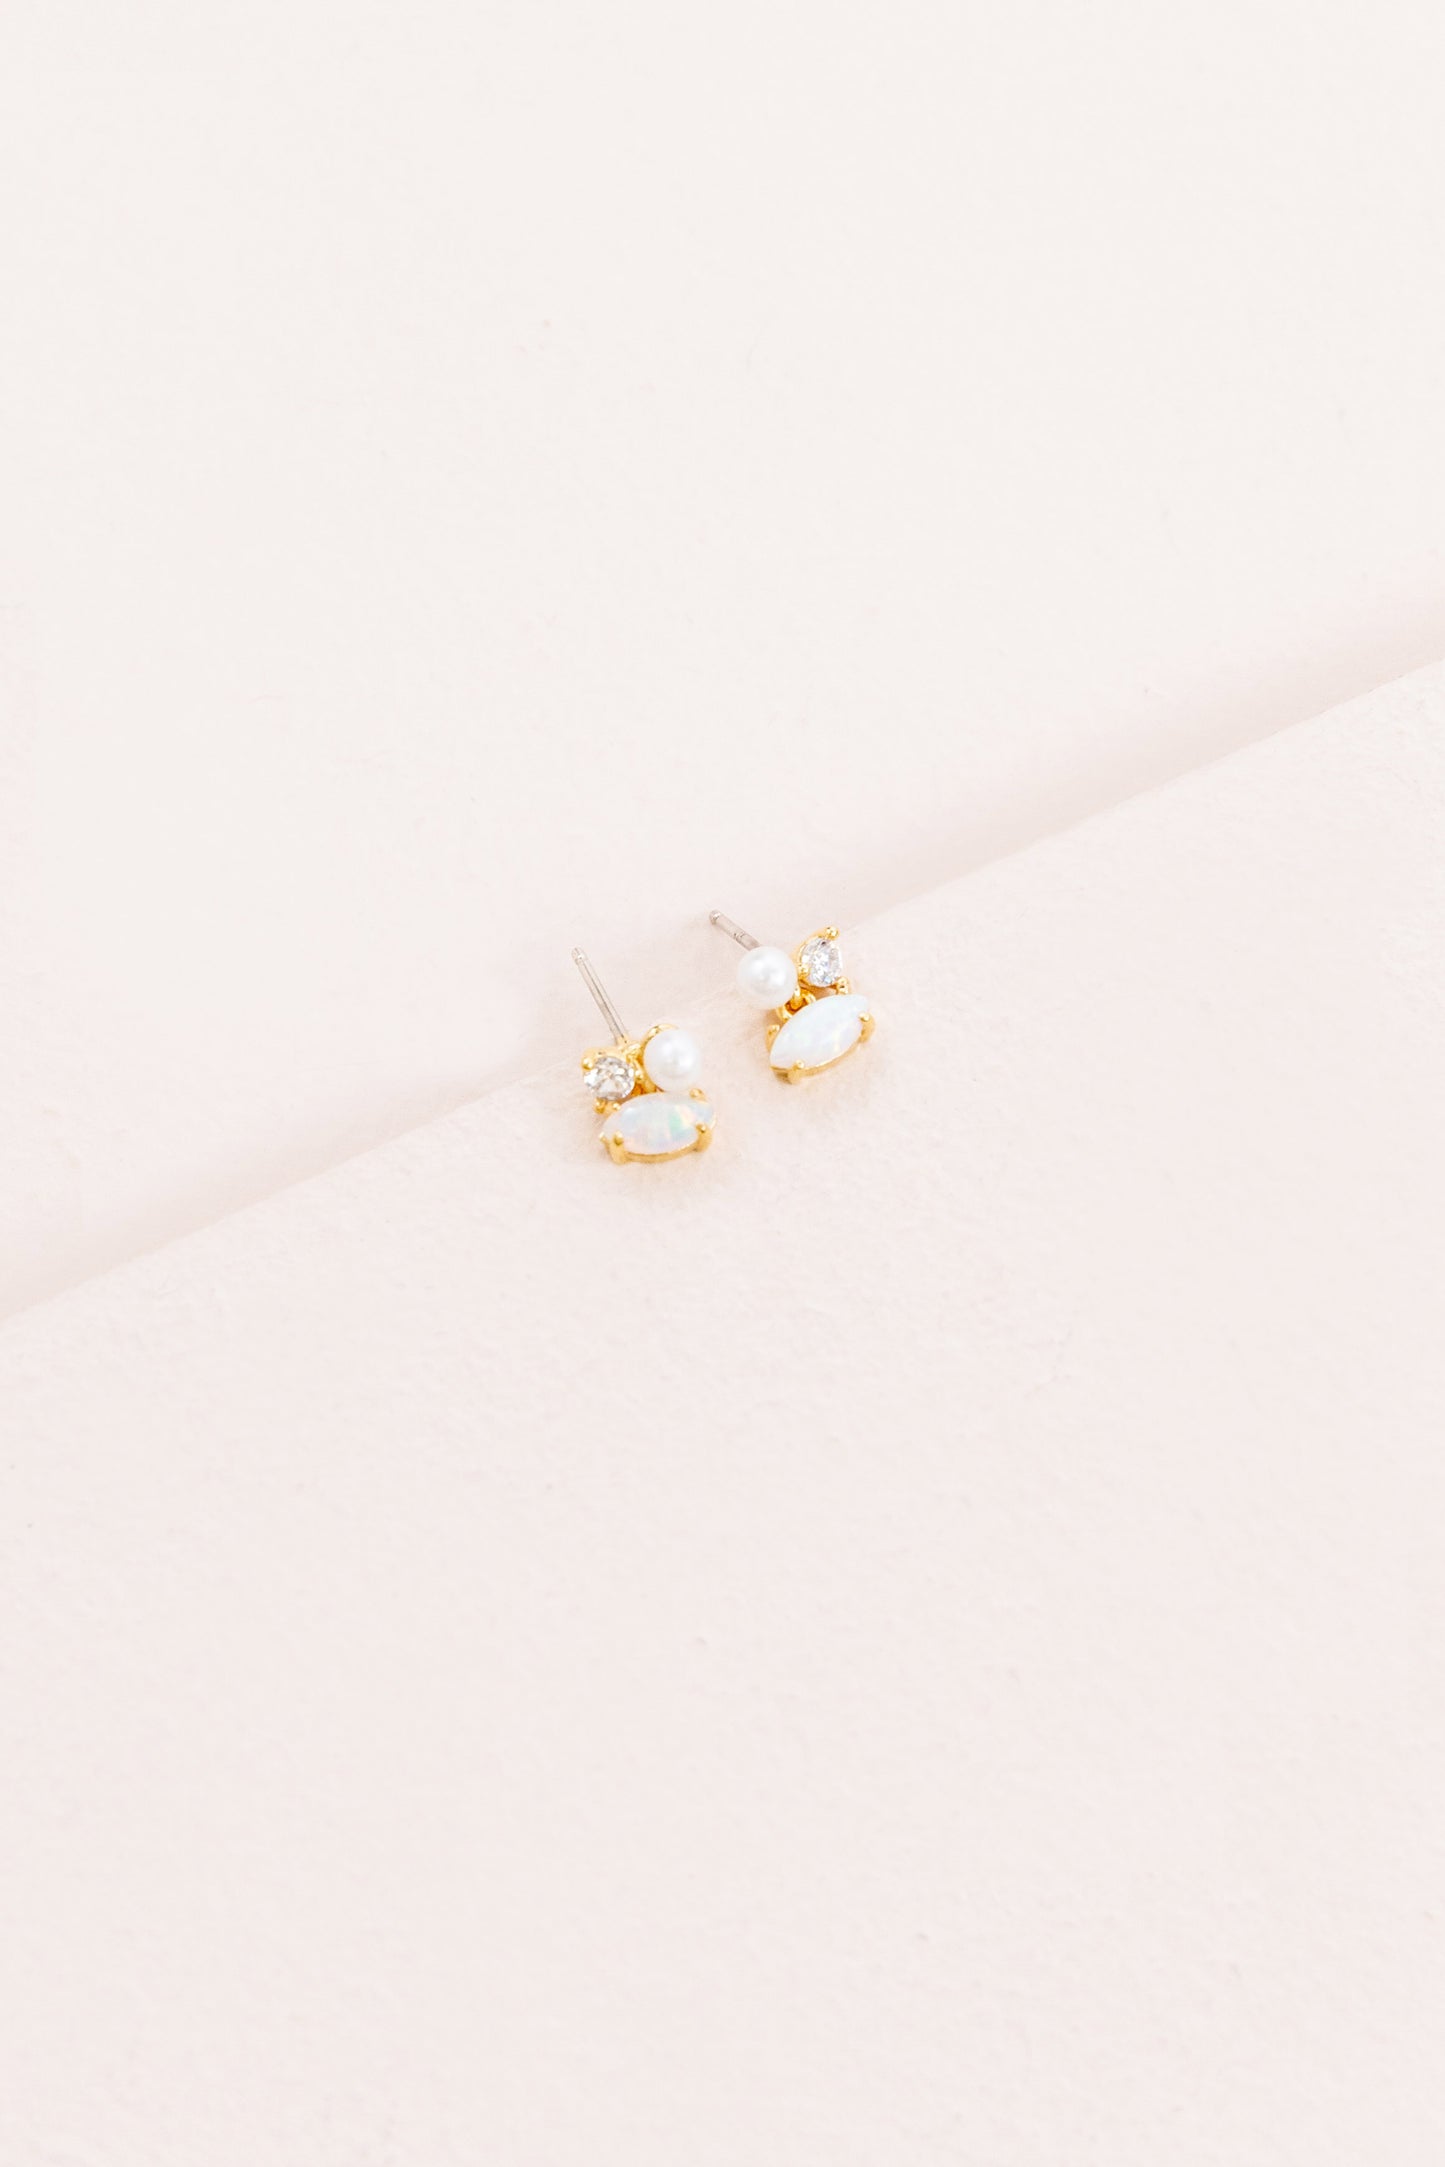 Pixum Tri Stone Earrings | White